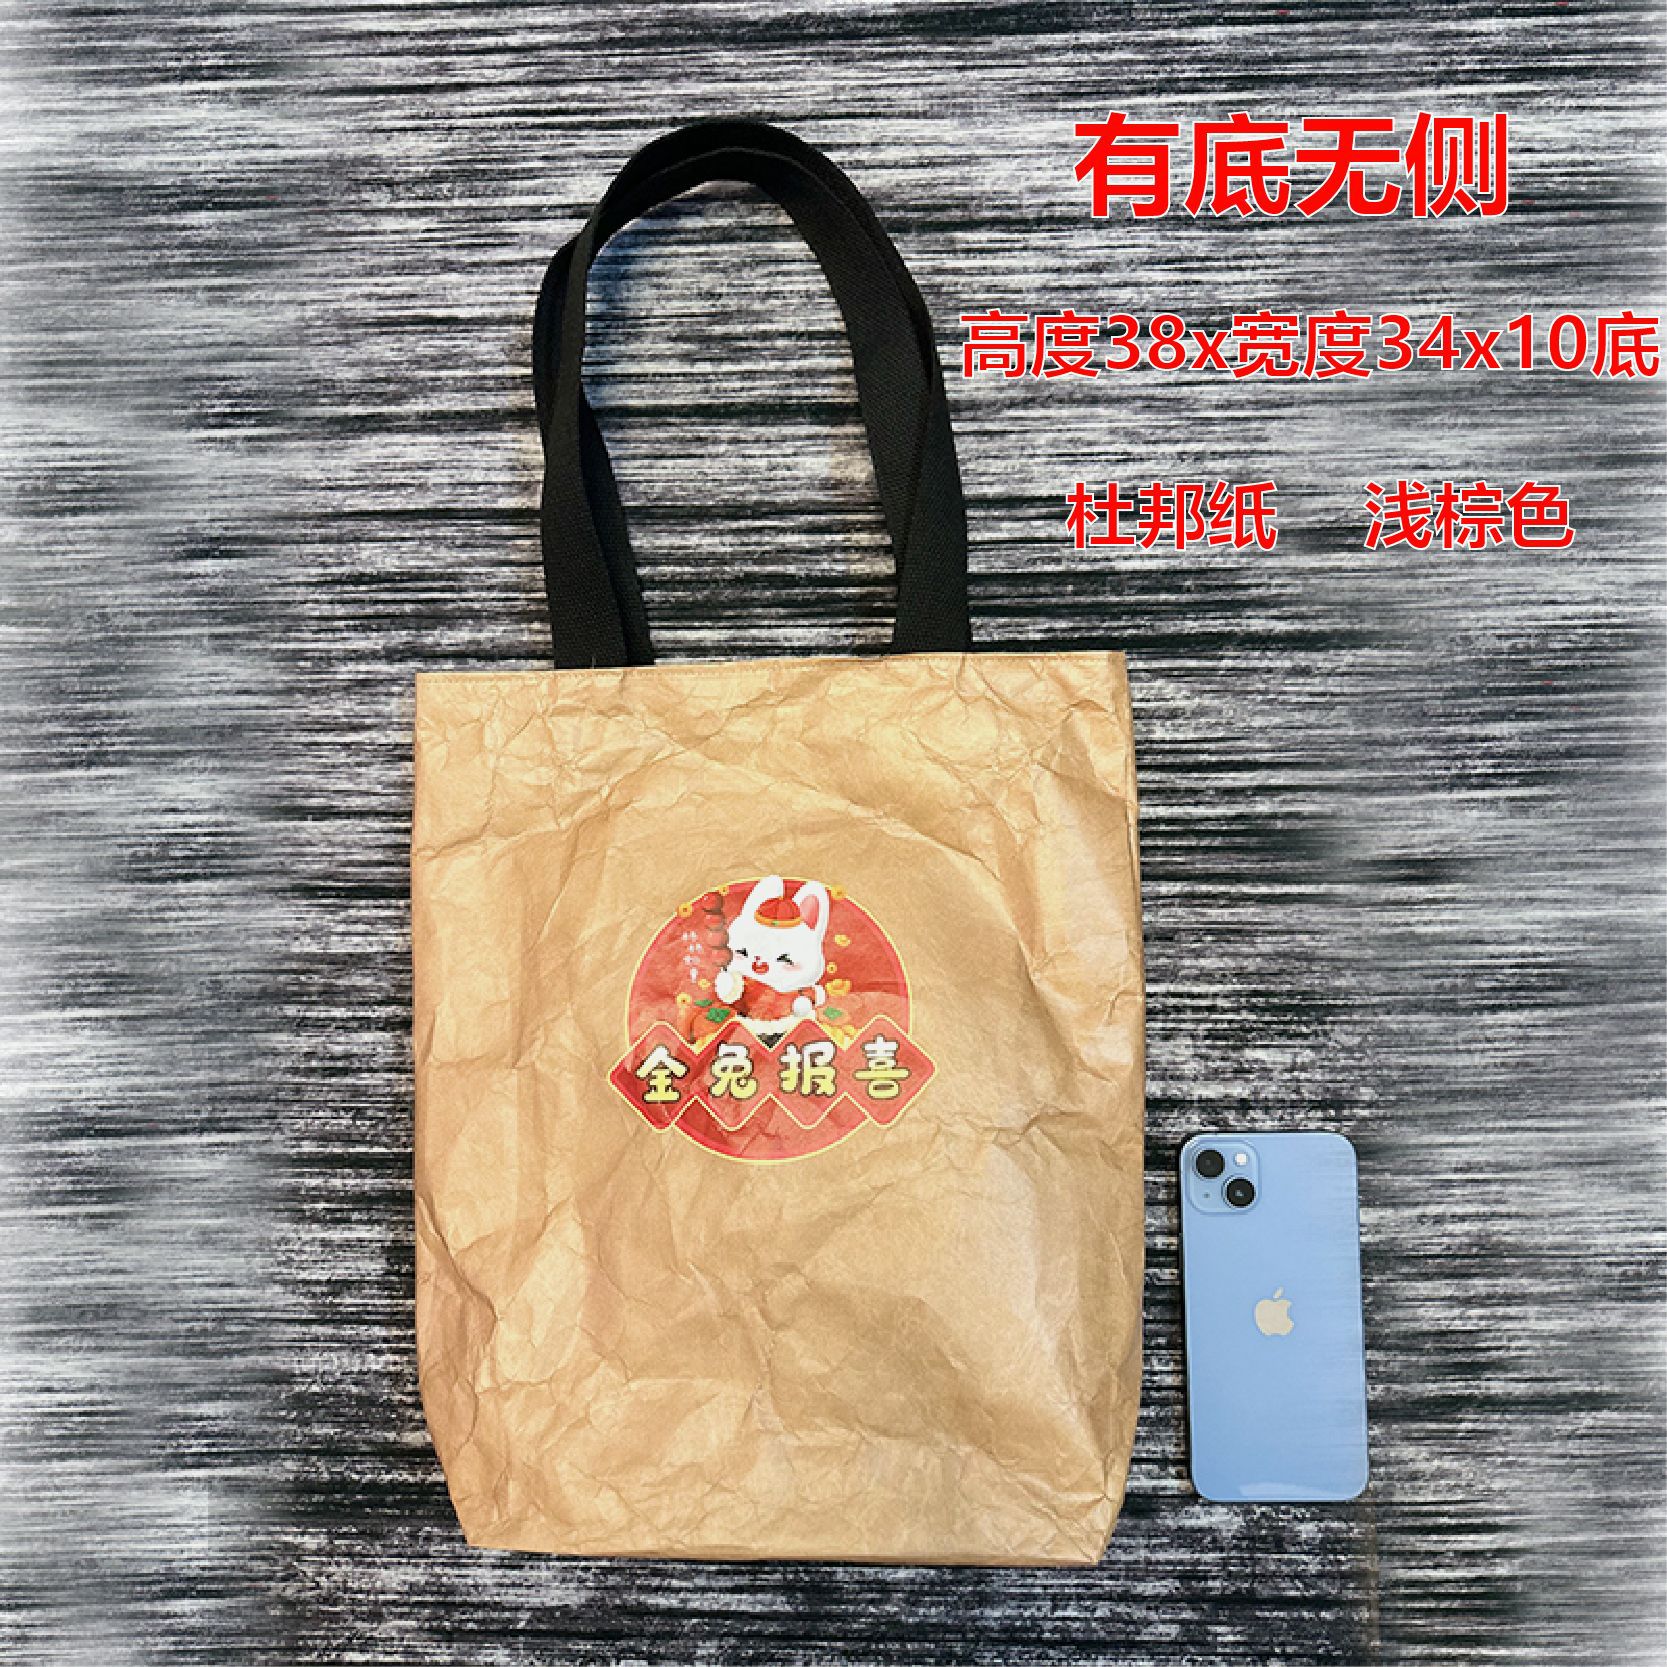 Printable Logo DuPont Paper Bag Washed and Rubbed Pattern Tear-Proof Shopping Bag Vintage Cowhide DuPont Paper Bag Handbag